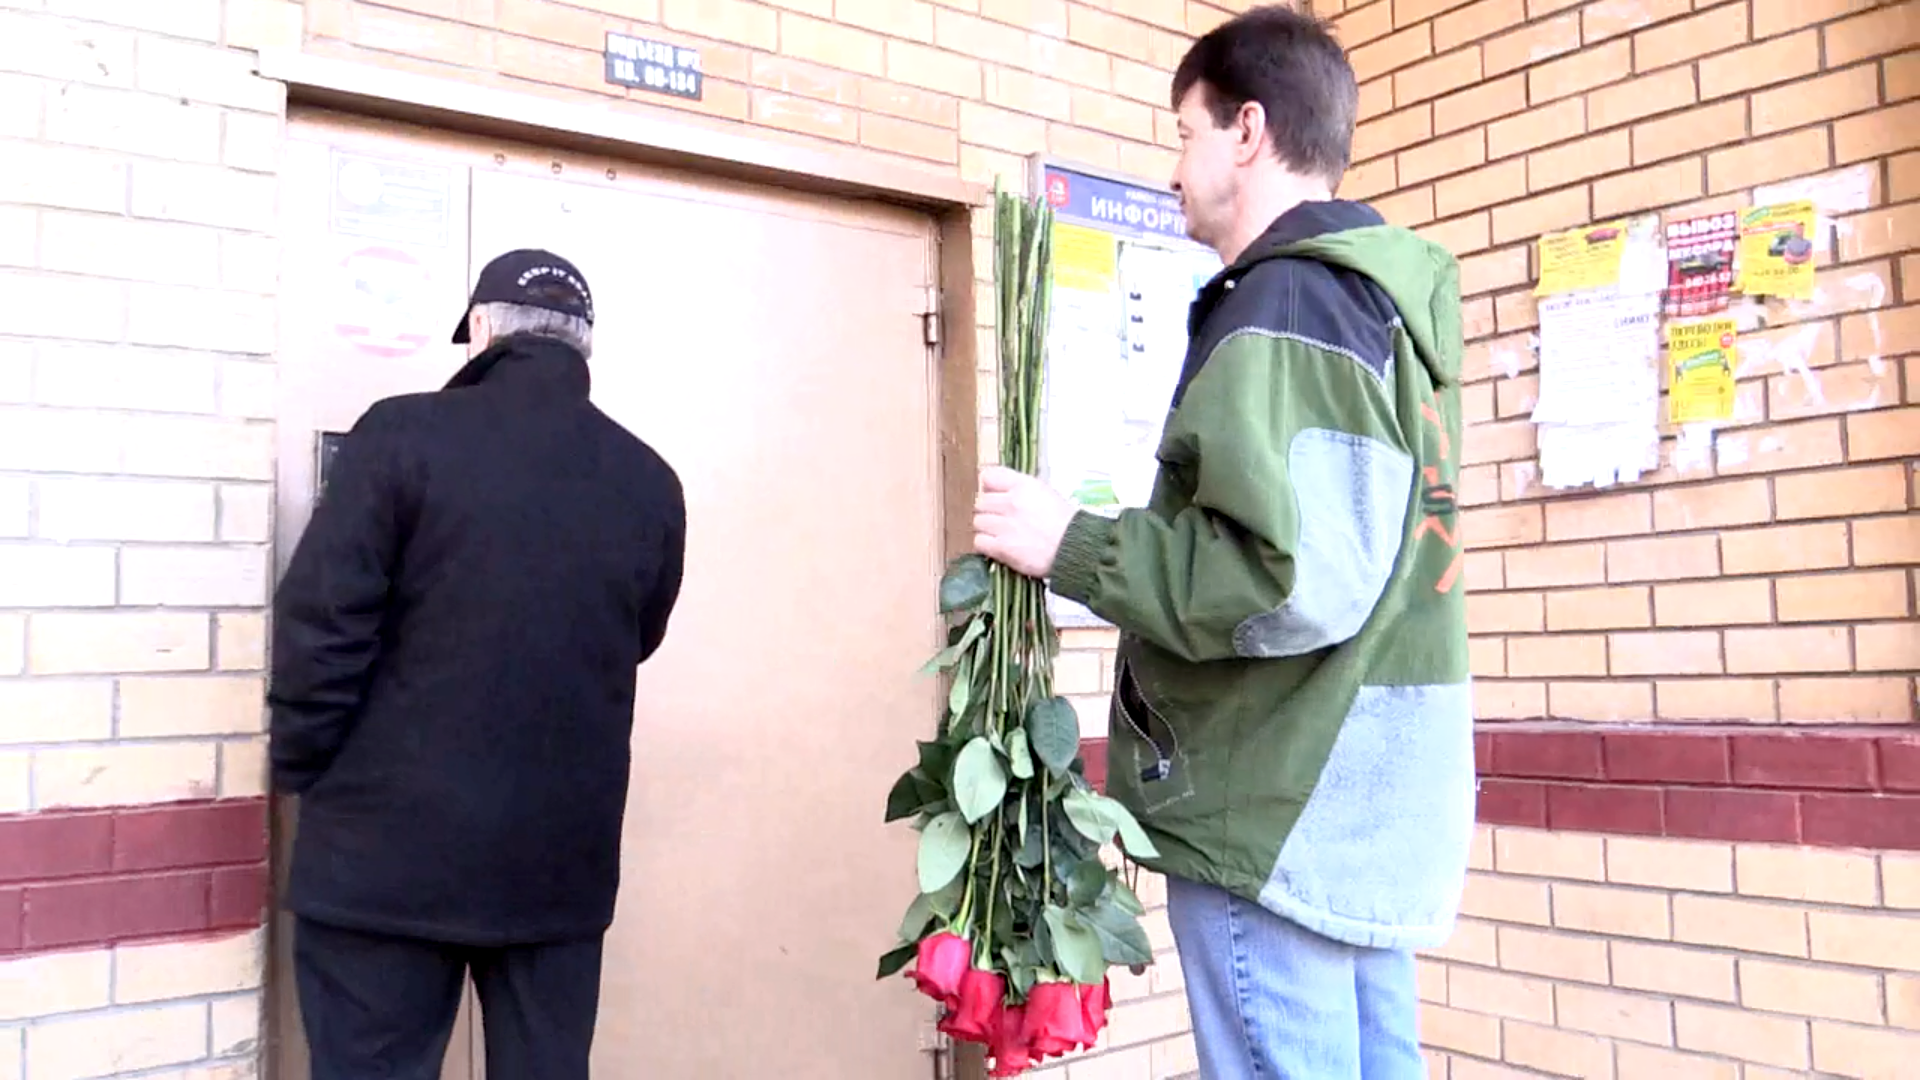 У подъезда бывшей супруги Игорь Ливанов появился с букетом алых роз